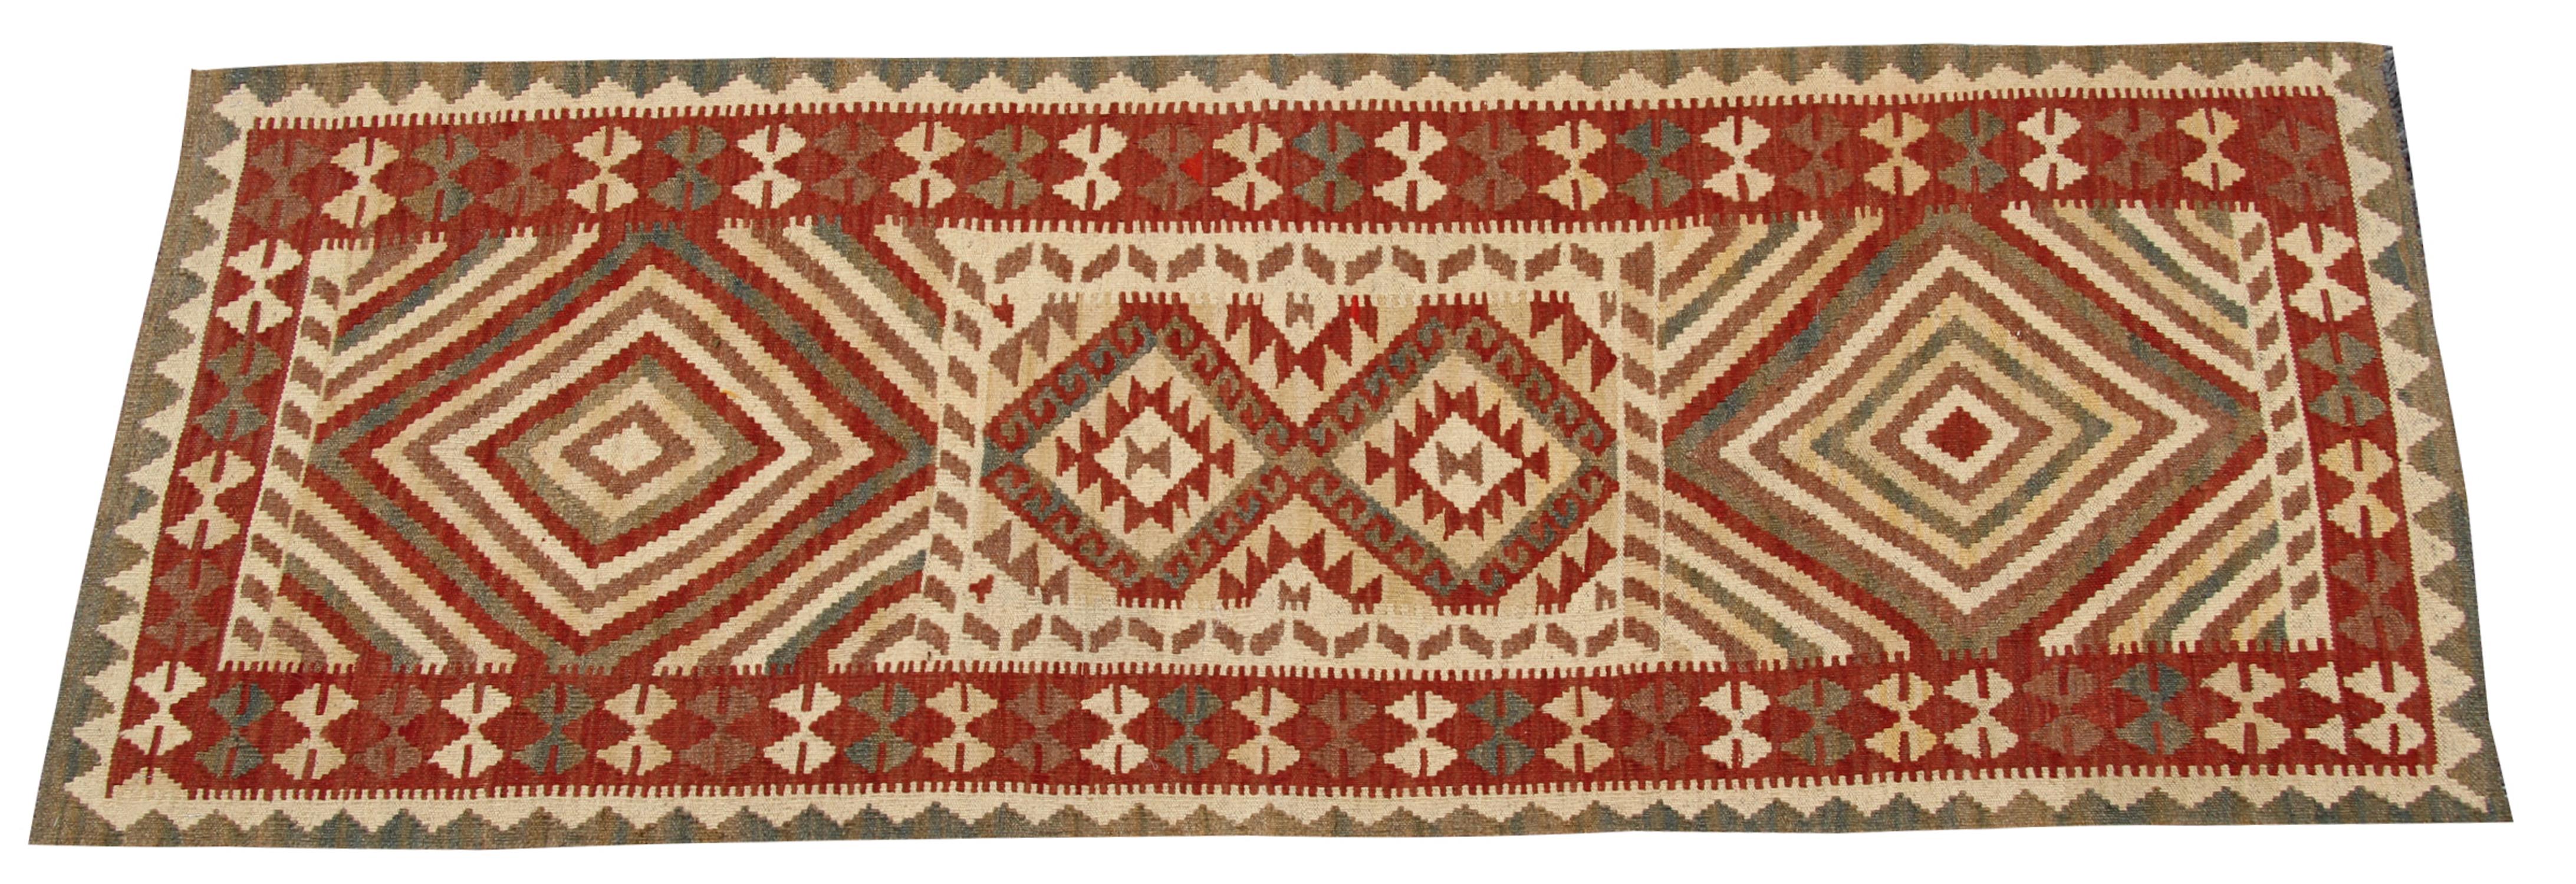 Afghan Vintage Kilims, Geometric Runner Rug Handmade Carpet Wool Kilim Rug